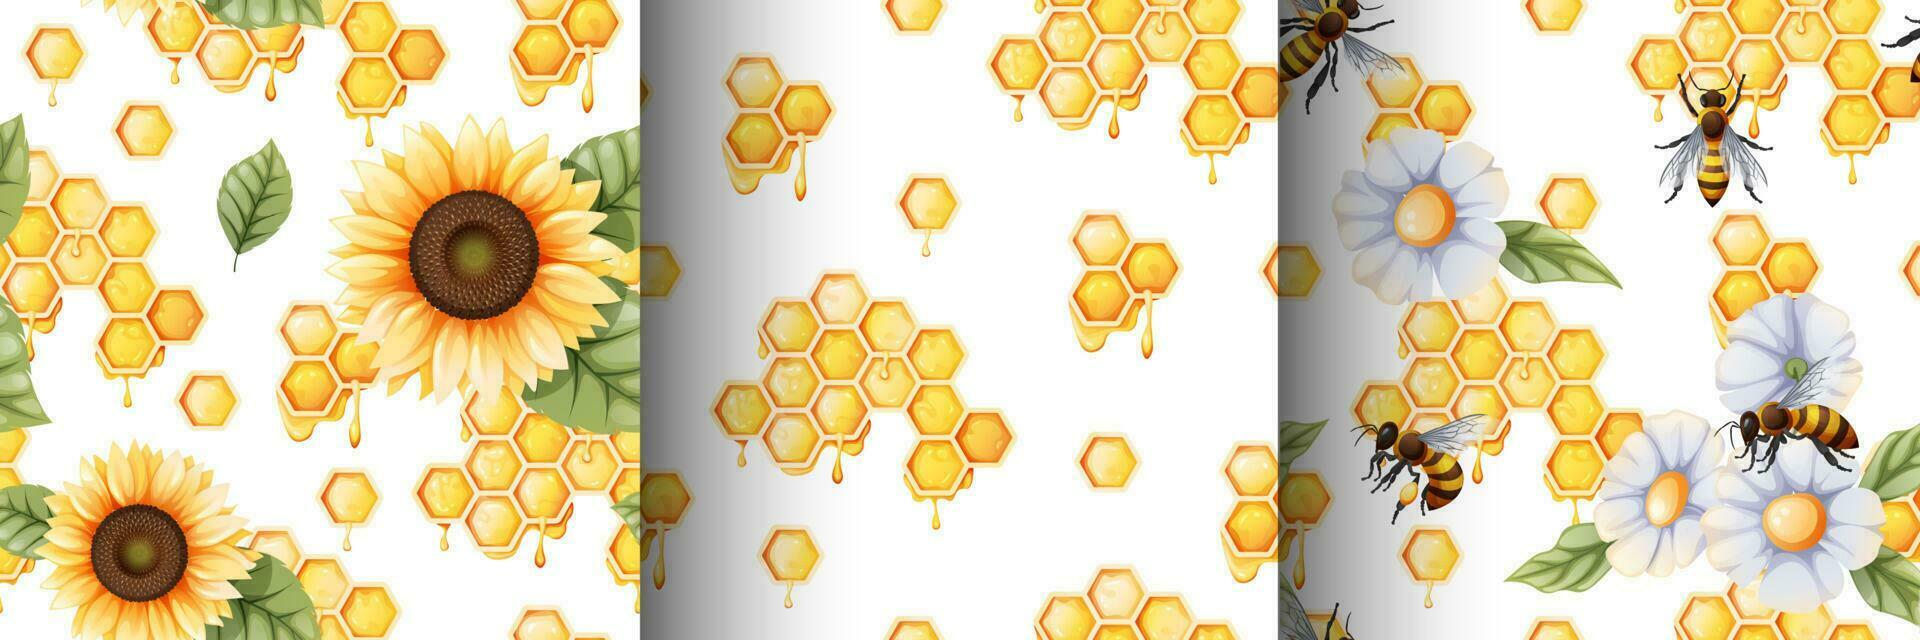 reeks van naadloos patronen met honingraat, bijen, zonnebloem, bladeren, honing.geschikt voor textiel, papier, achtergronden, decor vector